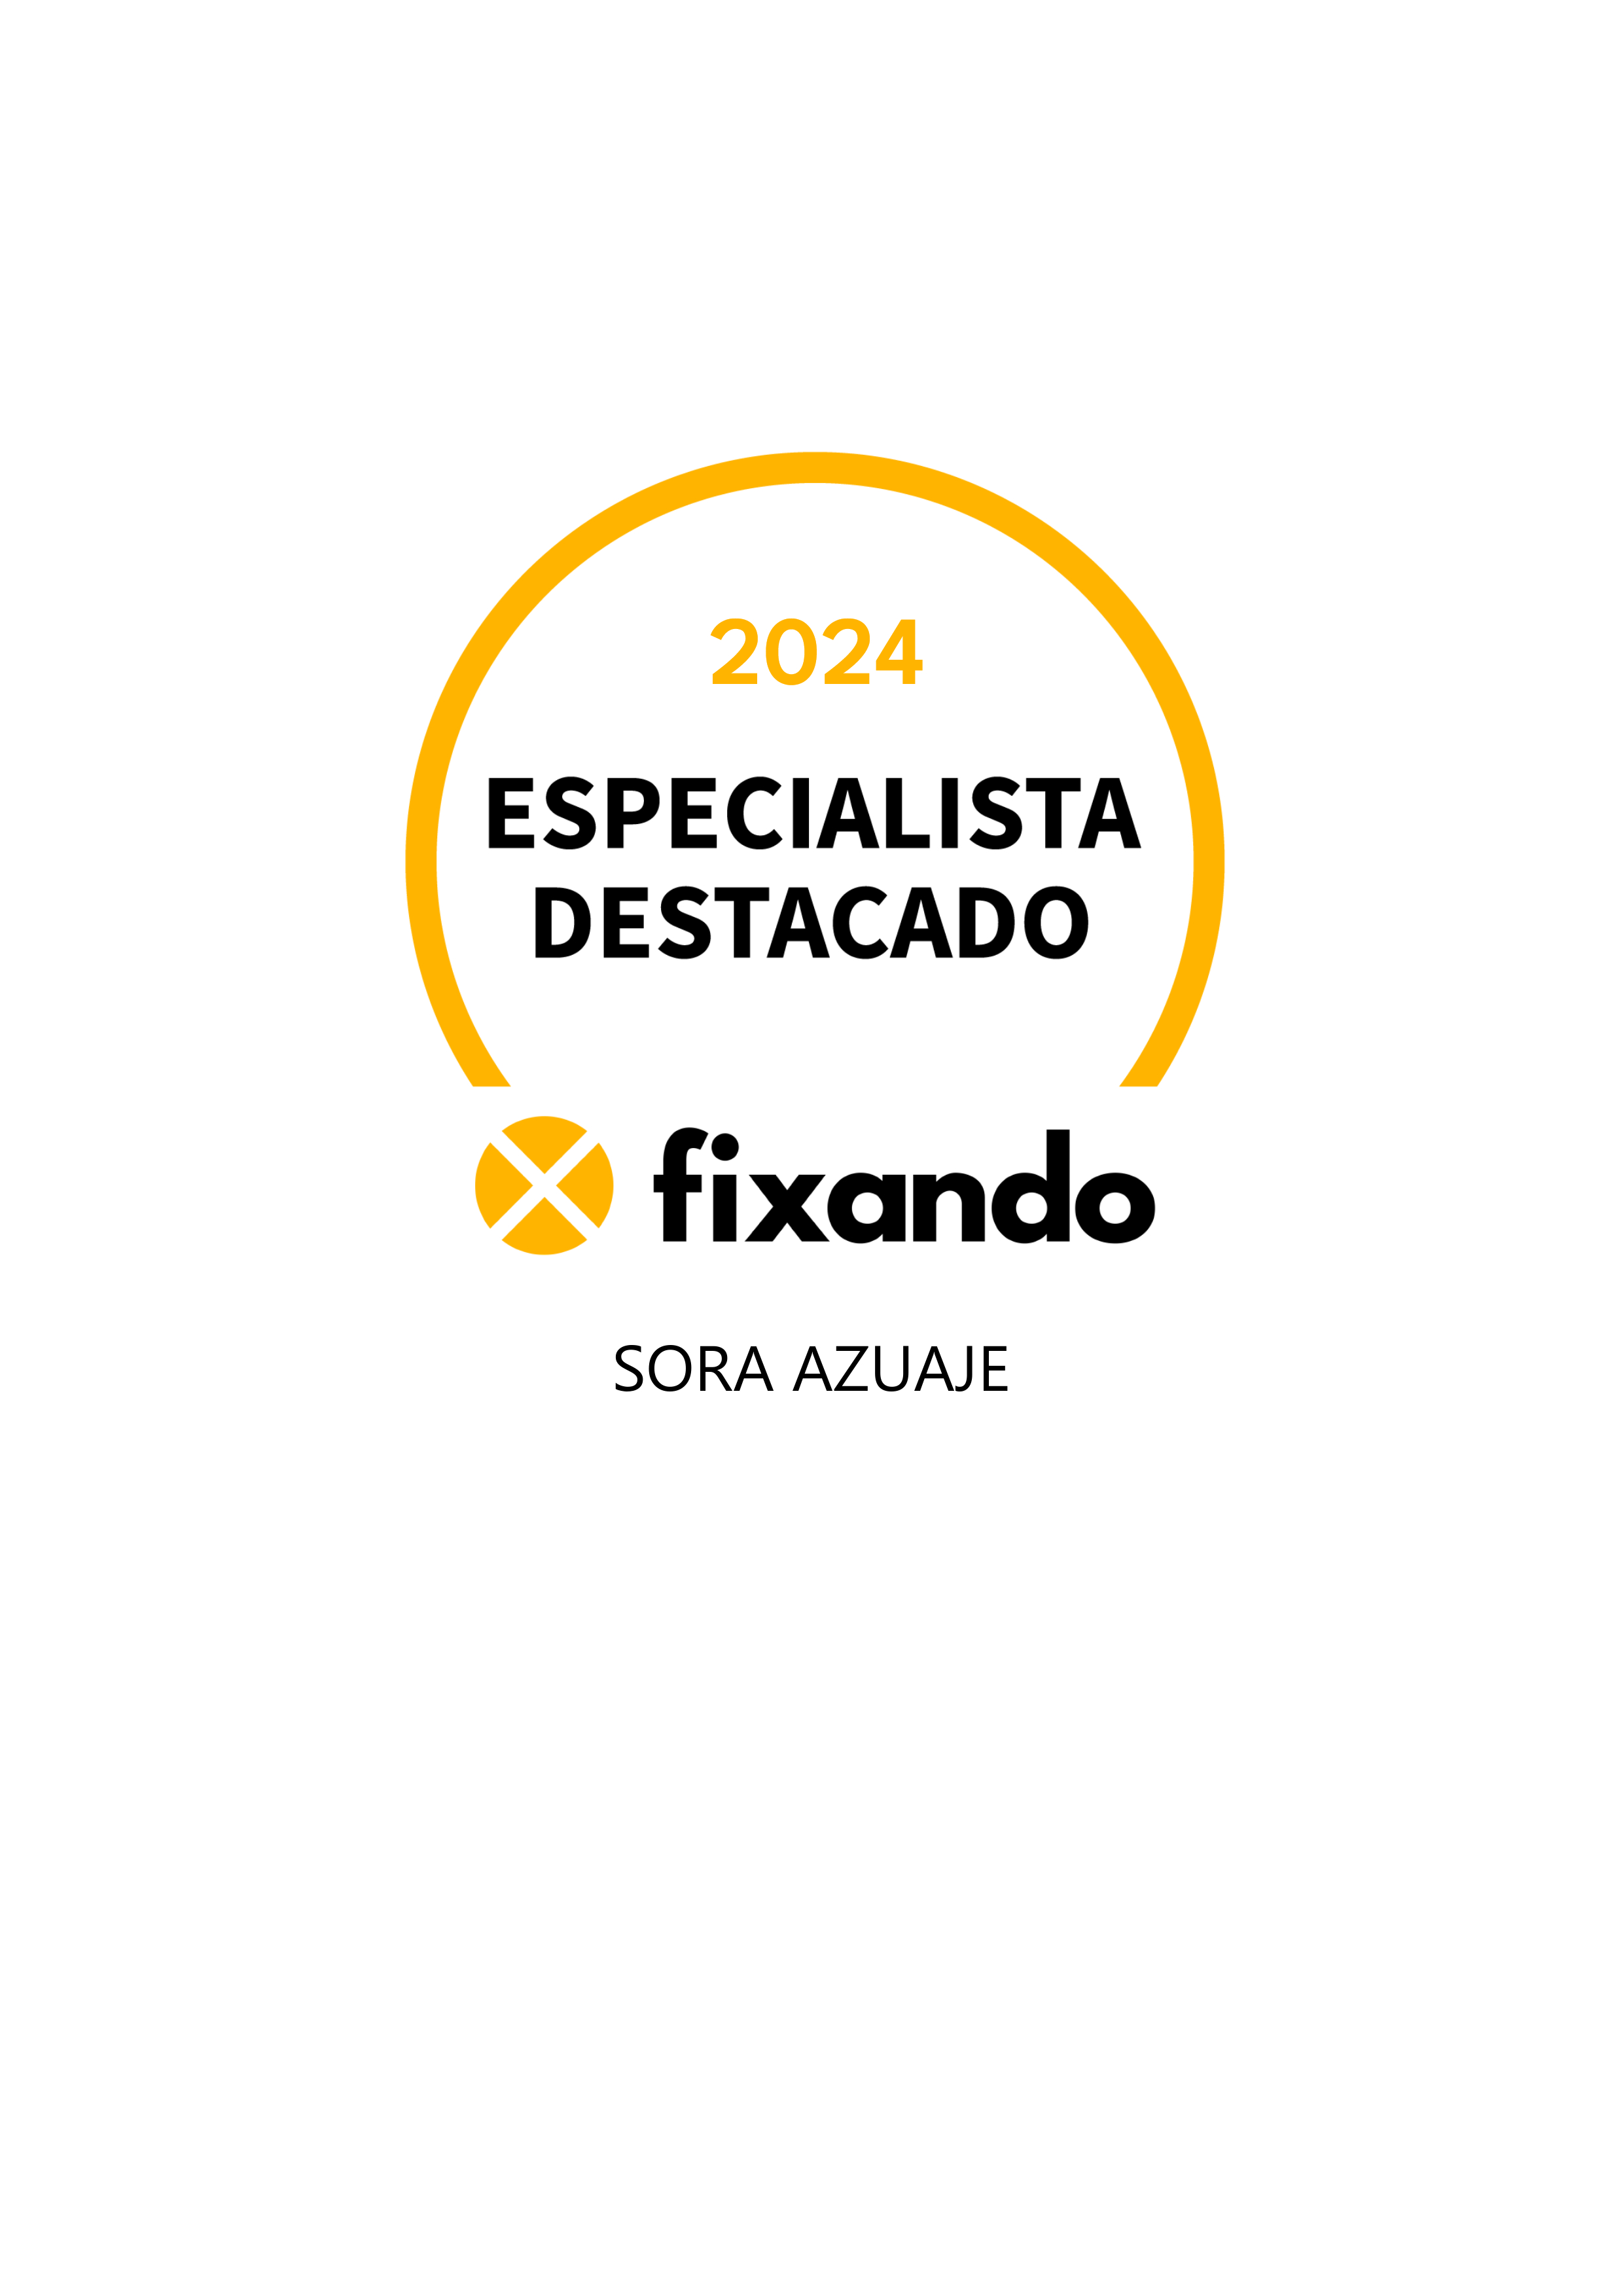 Sora Azuaje - Porto - Design de Logotipos